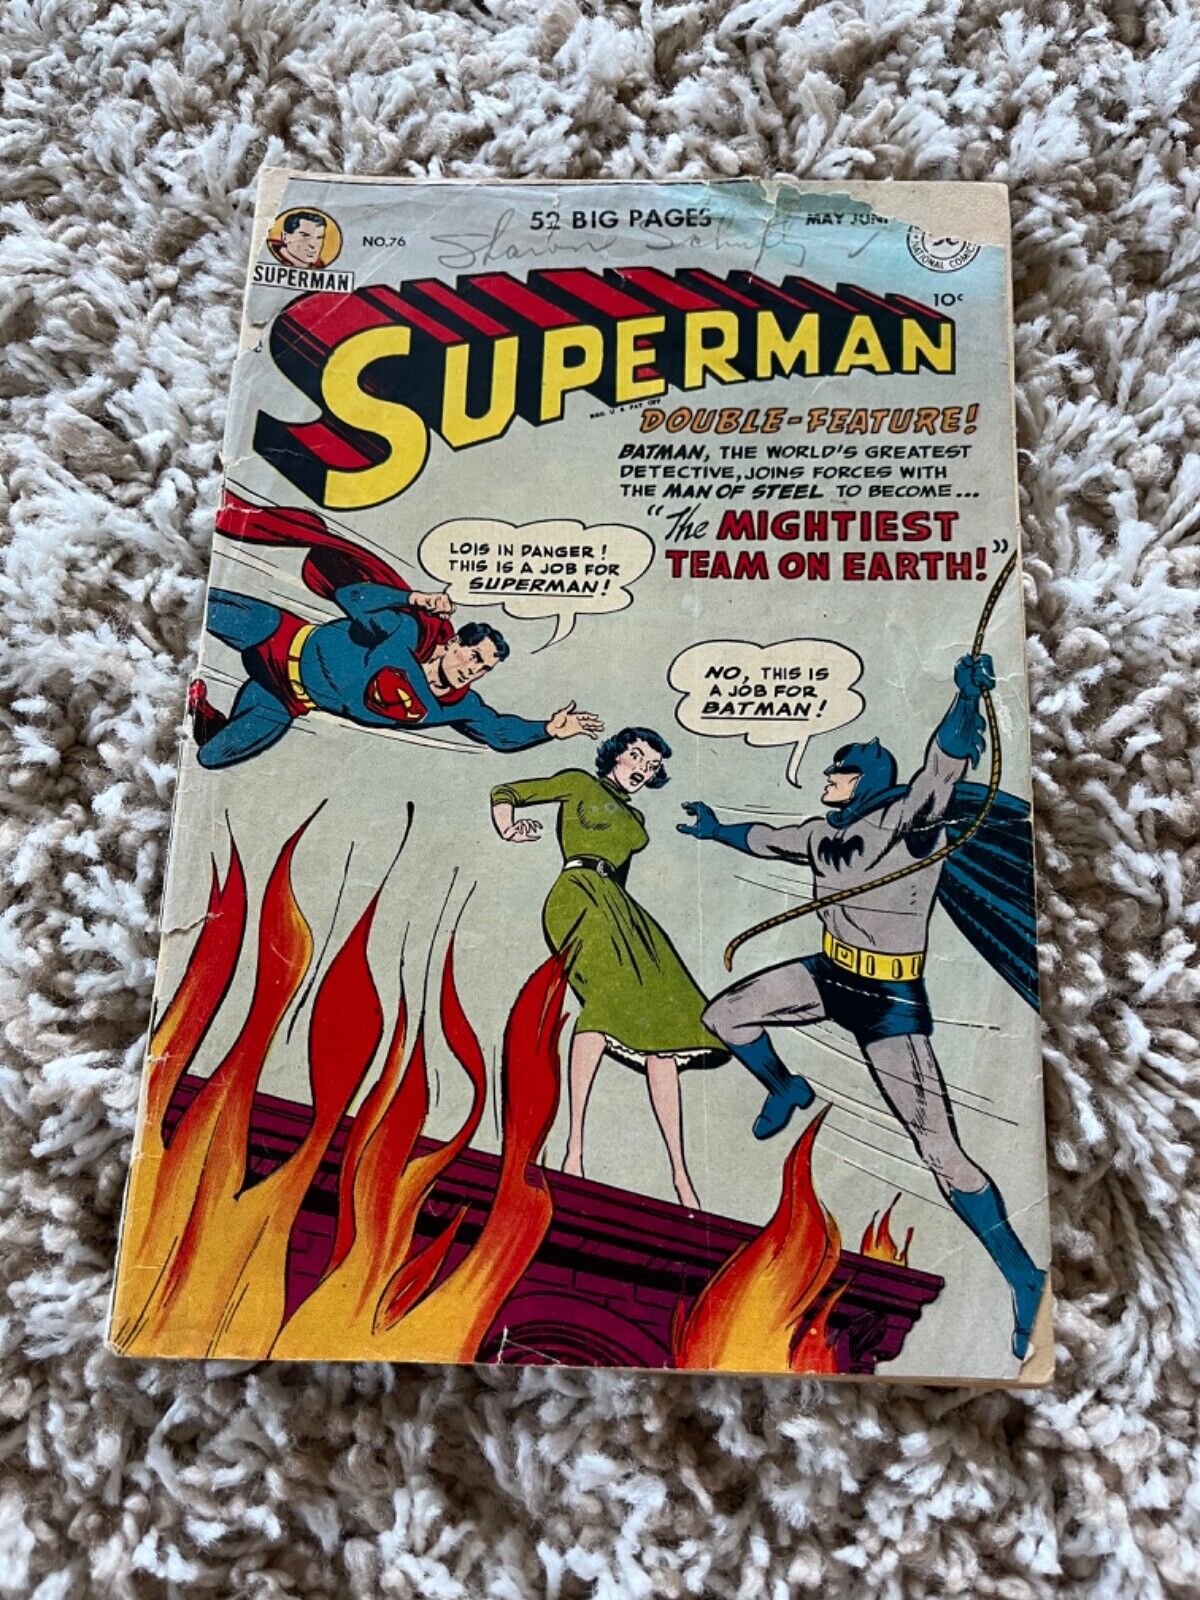 Superman #76 Poor (detached front cover/no back cover) DC Comics 1952